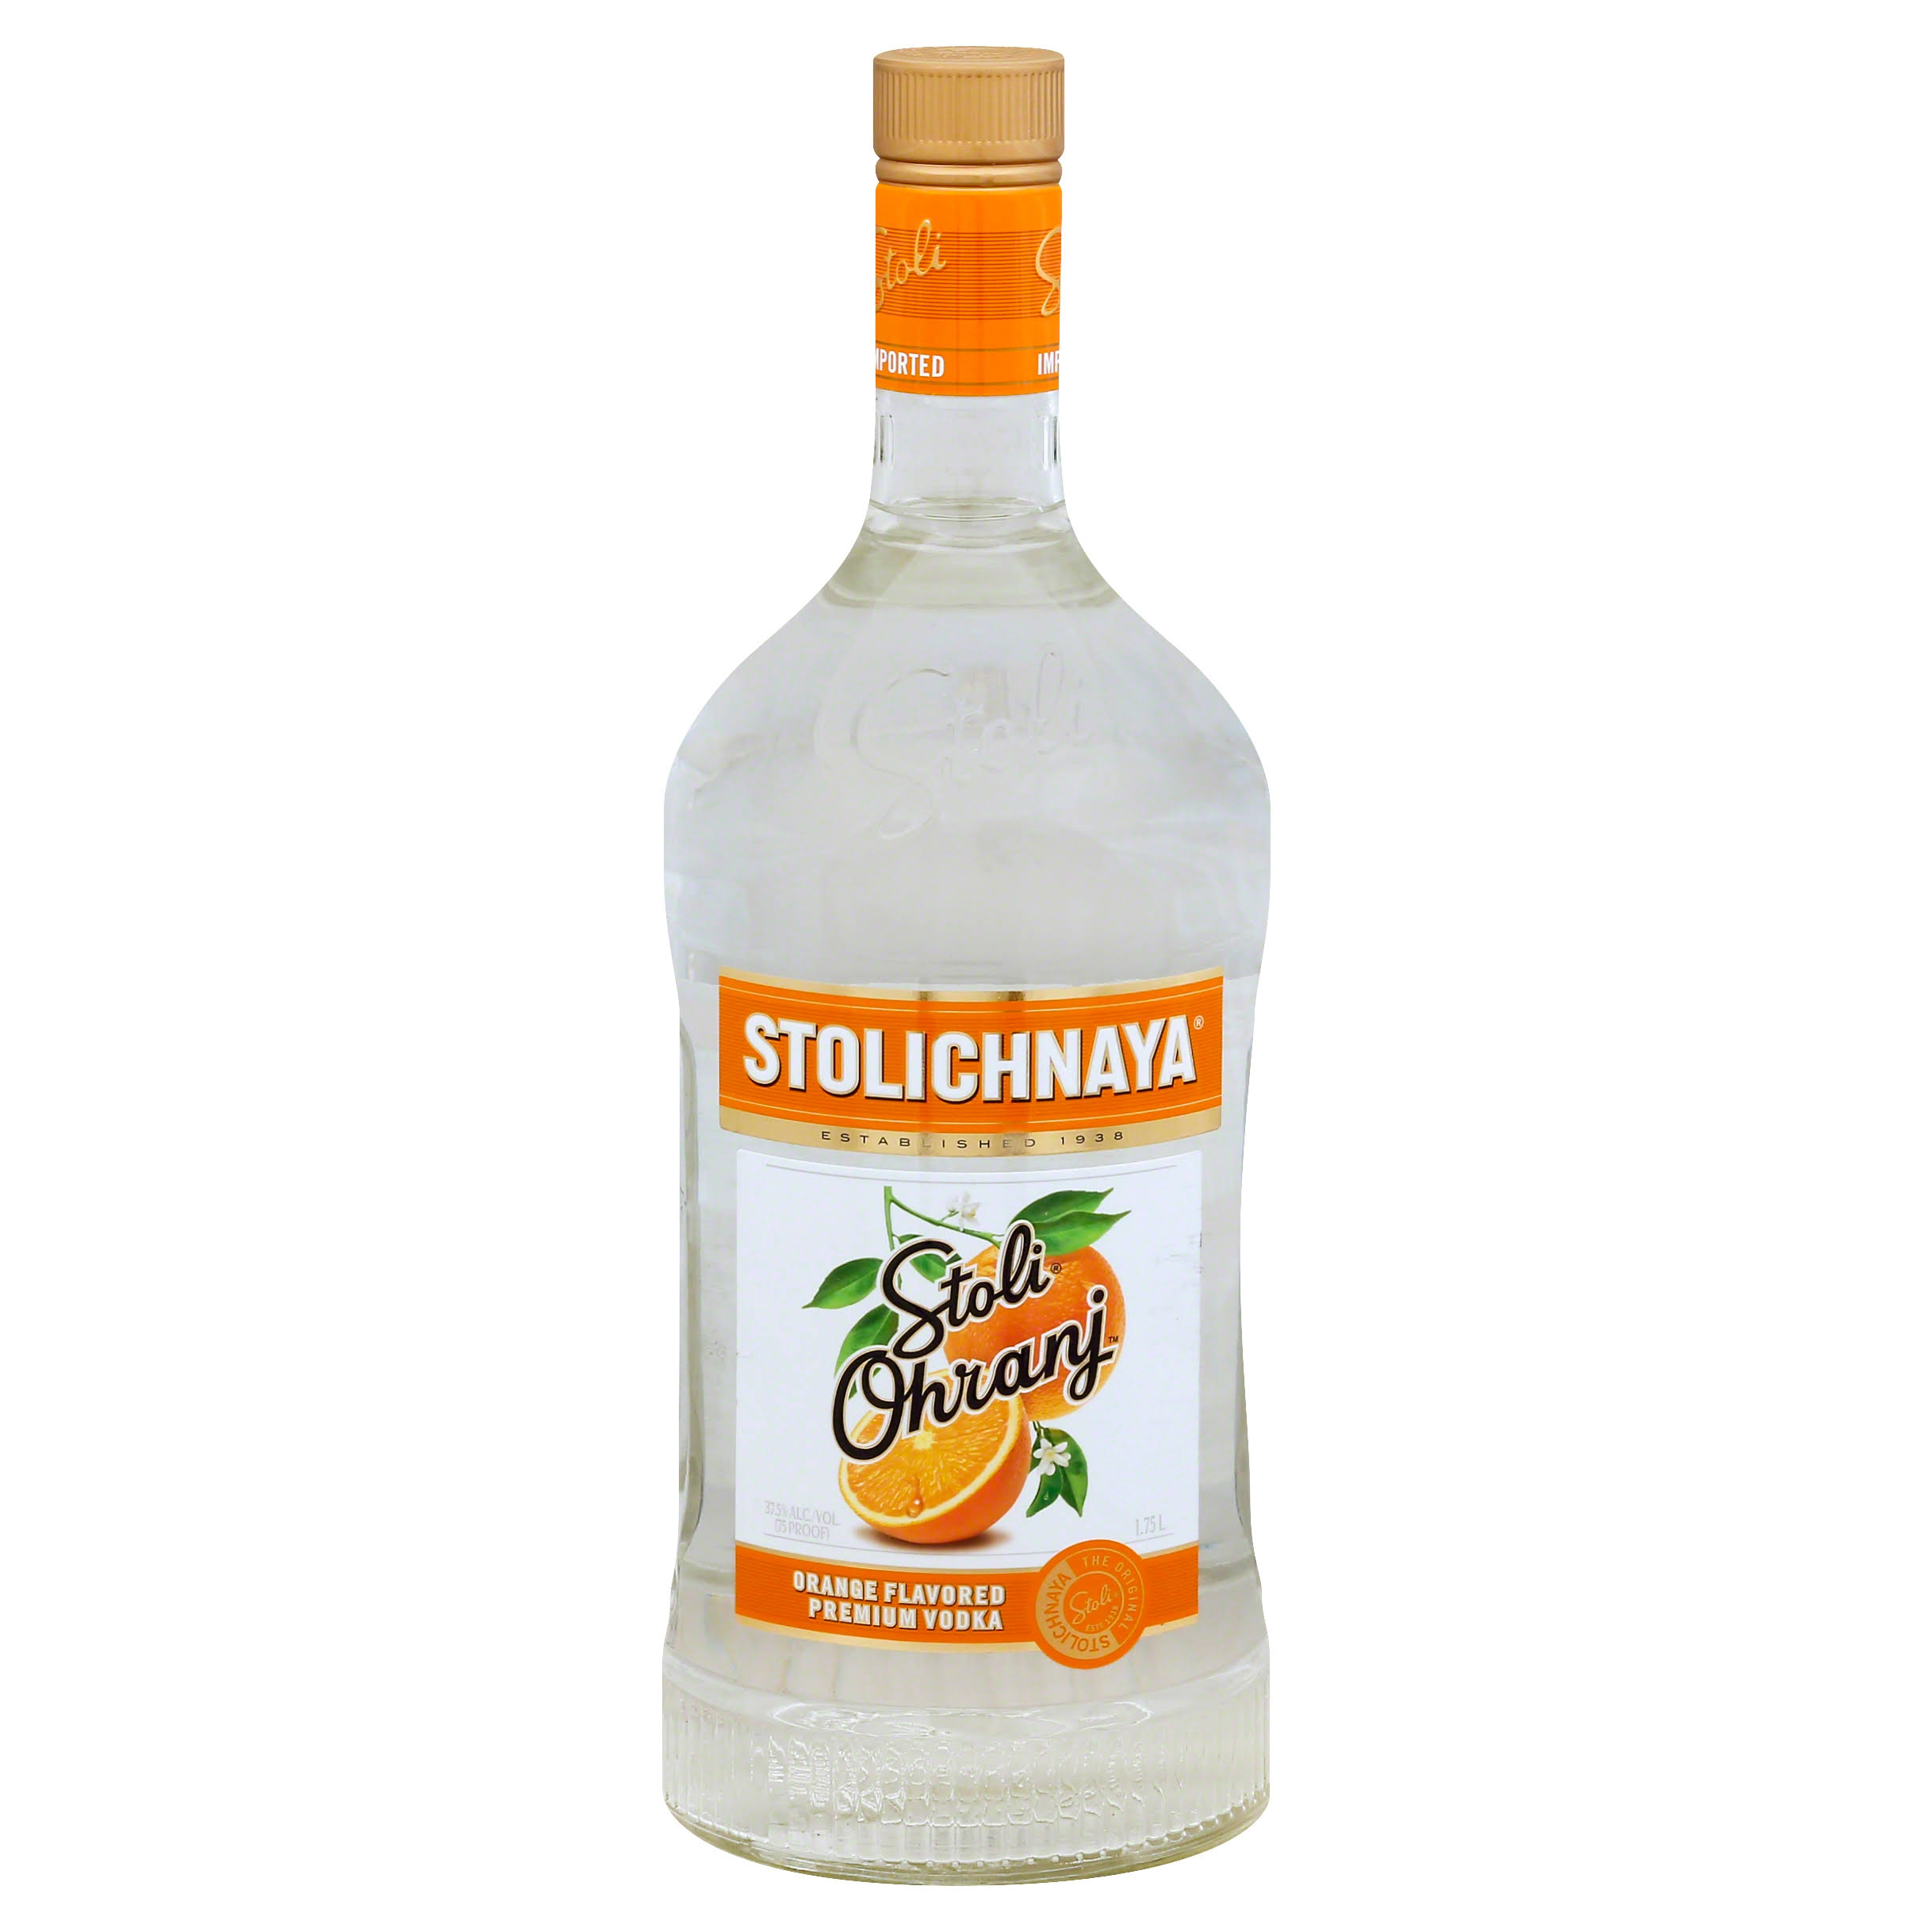 Stolichnaya Vodka, Premium, Stoli Ohranj - 1.75 lt